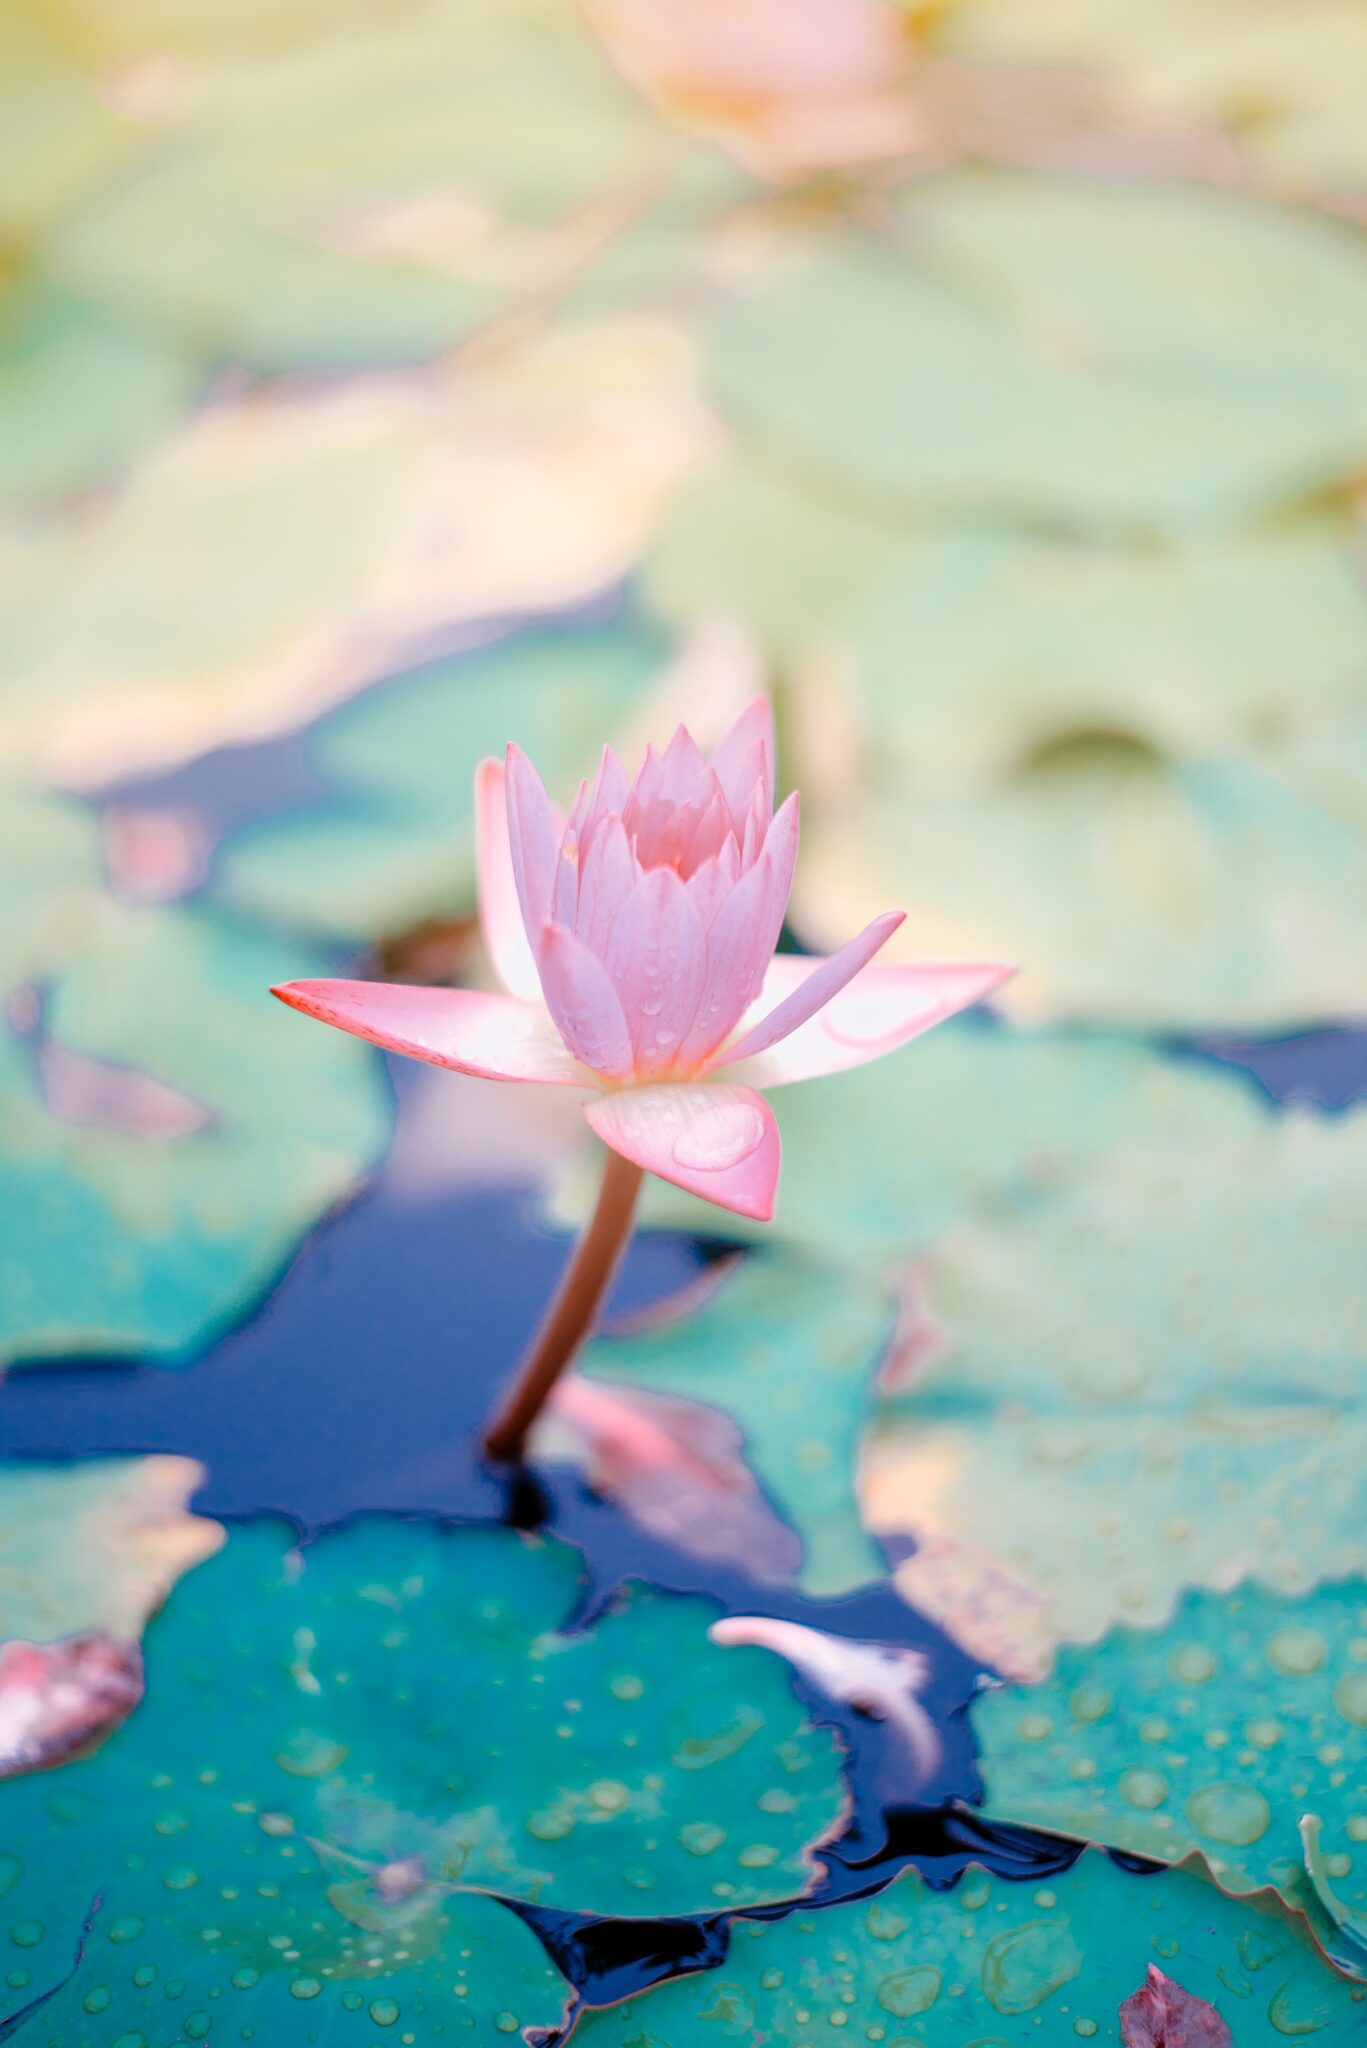 Lotus flower blooming. Healing mental health.